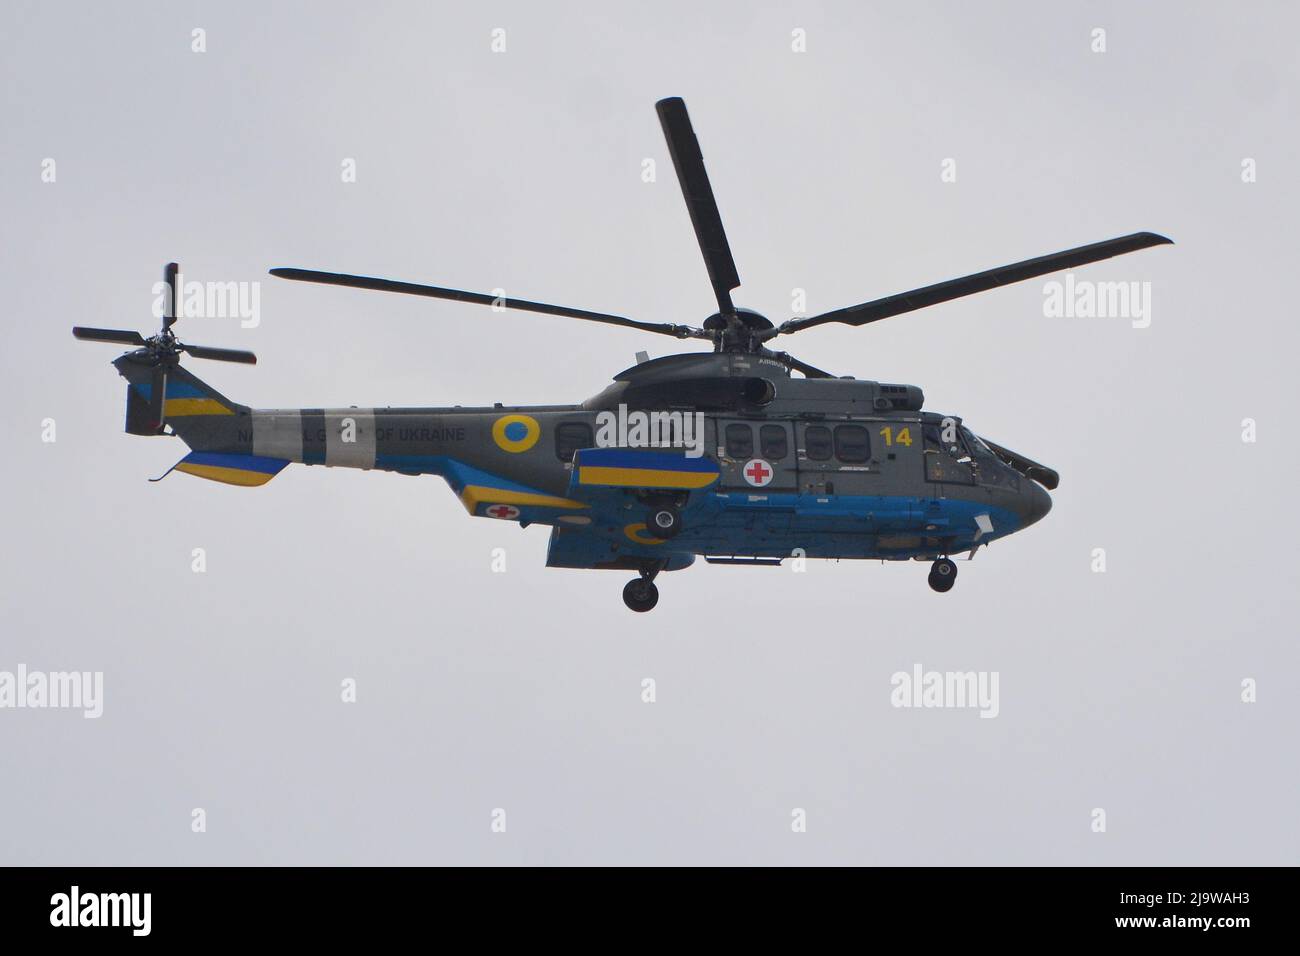 Ein medizinischer Hubschrauber der Nationalgarde der Ukraine evakuiert schwer verwundete Soldaten aus der Kampfzone. Ukrainische Truppen wehren sich weiterhin gegen die Armee der Russischen Föderation, die seit dem 24. Februar 2022 die größte militärische Katastrophe seit dem Zweiten Weltkrieg verursacht hat Stockfoto